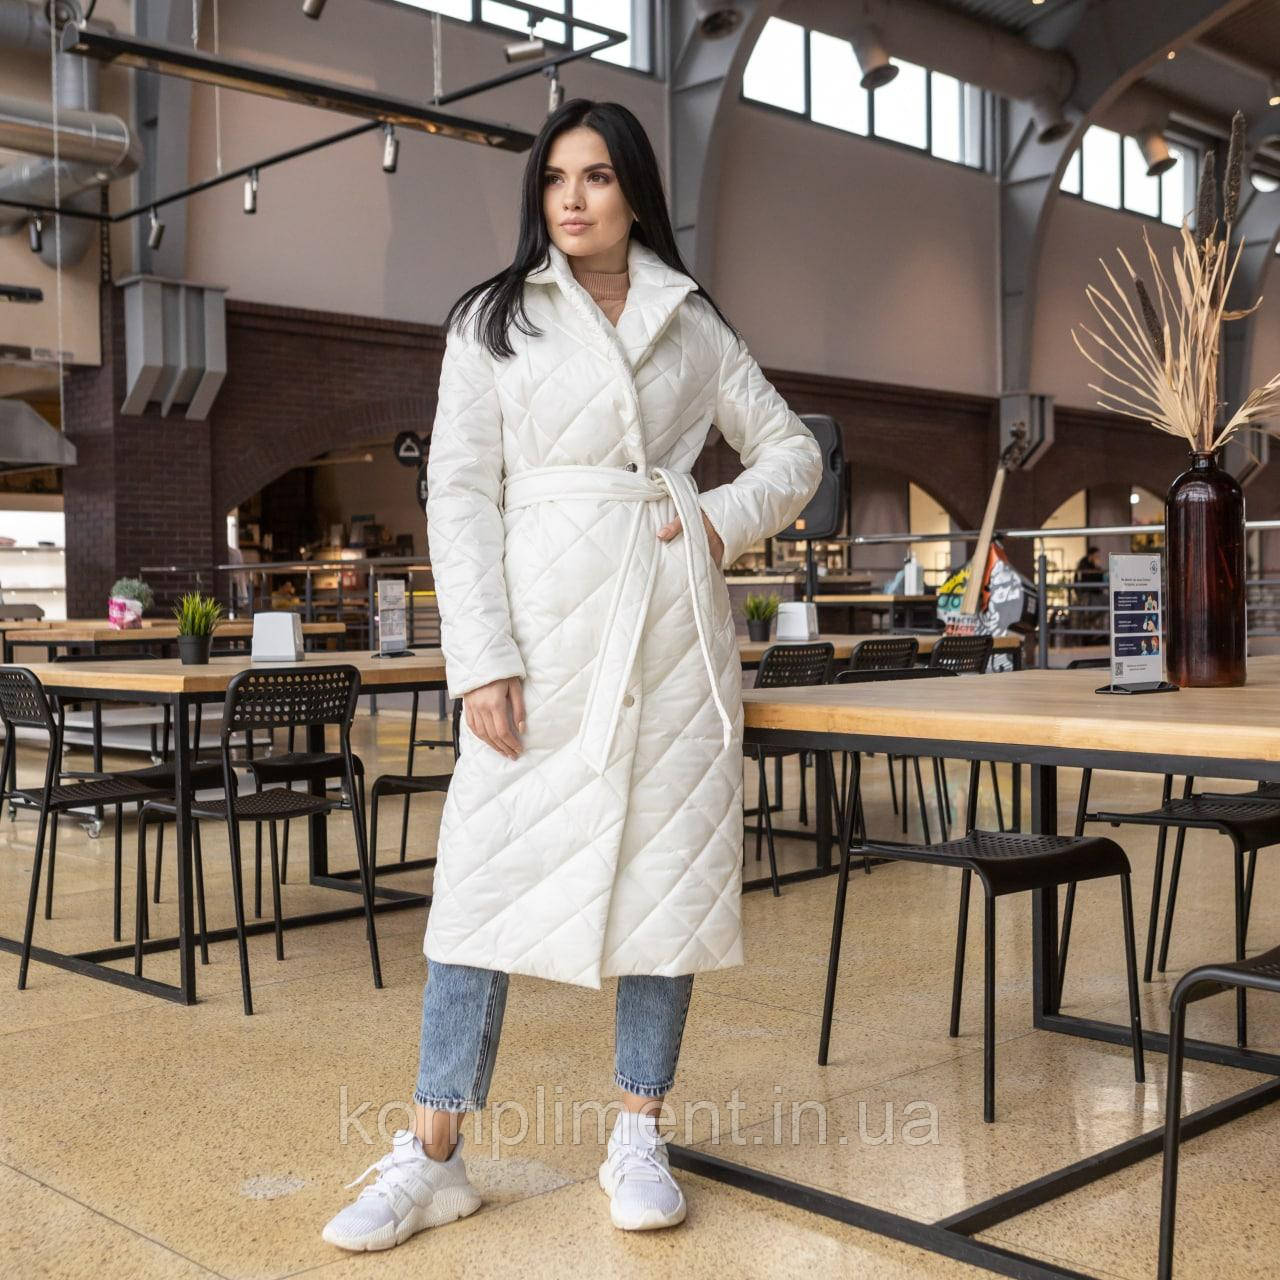 Модне жіноче молодіжне весняне пальто "Стокгольм", біле